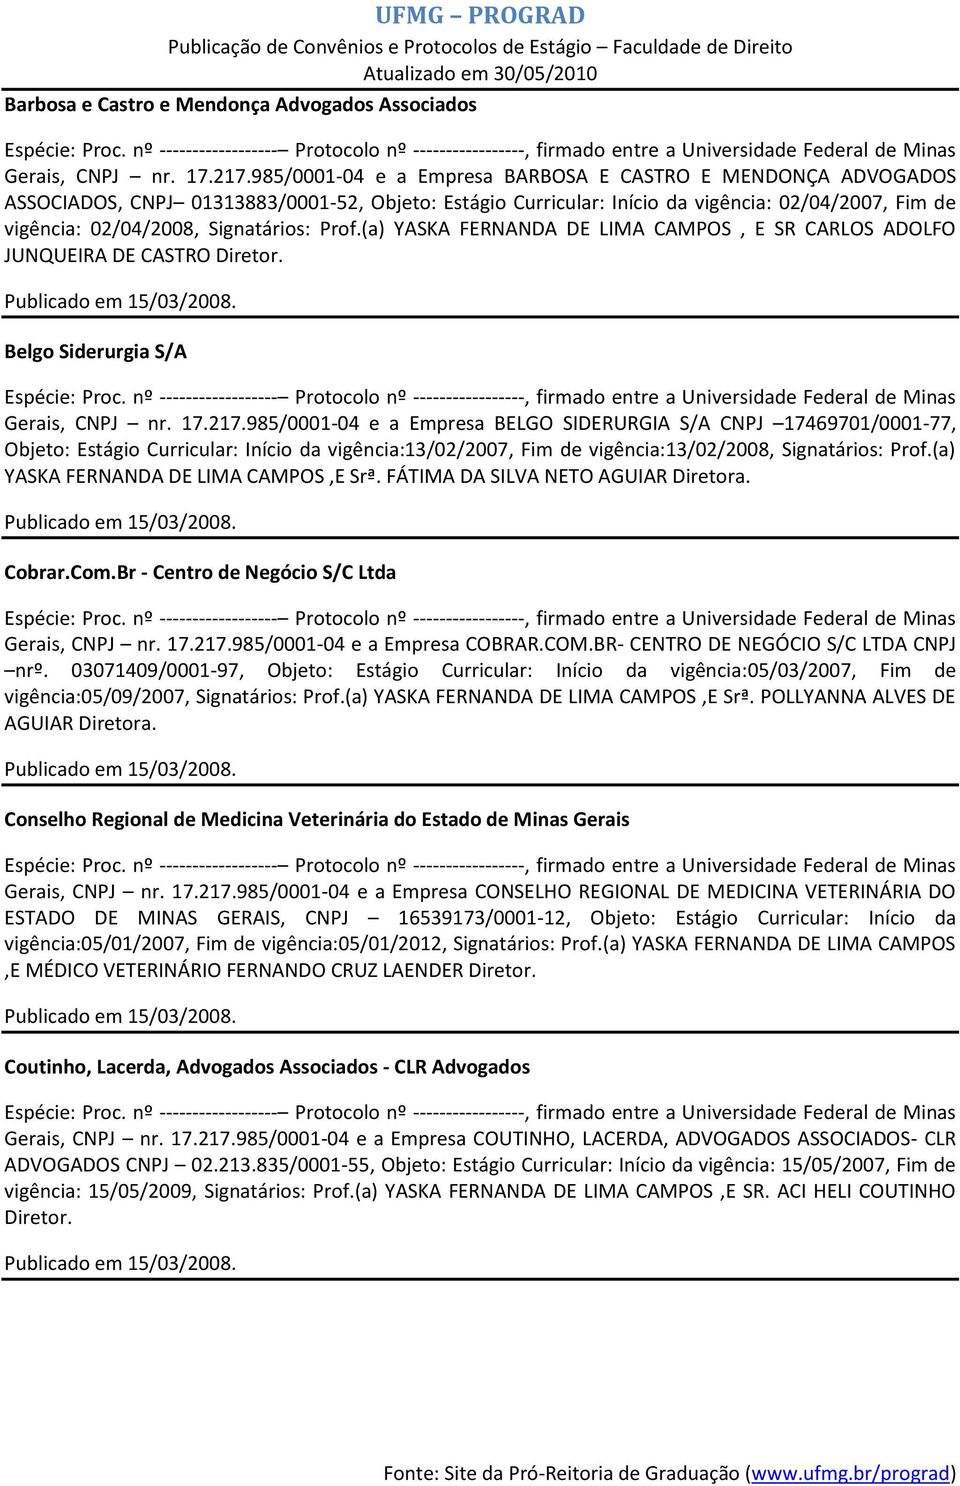 Prof.(a) YASKA FERNANDA DE LIMA CAMPOS, E SR CARLOS ADOLFO JUNQUEIRA DE CASTRO Diretor. Belgo Siderurgia S/A Gerais, CNPJ nr. 17.217.